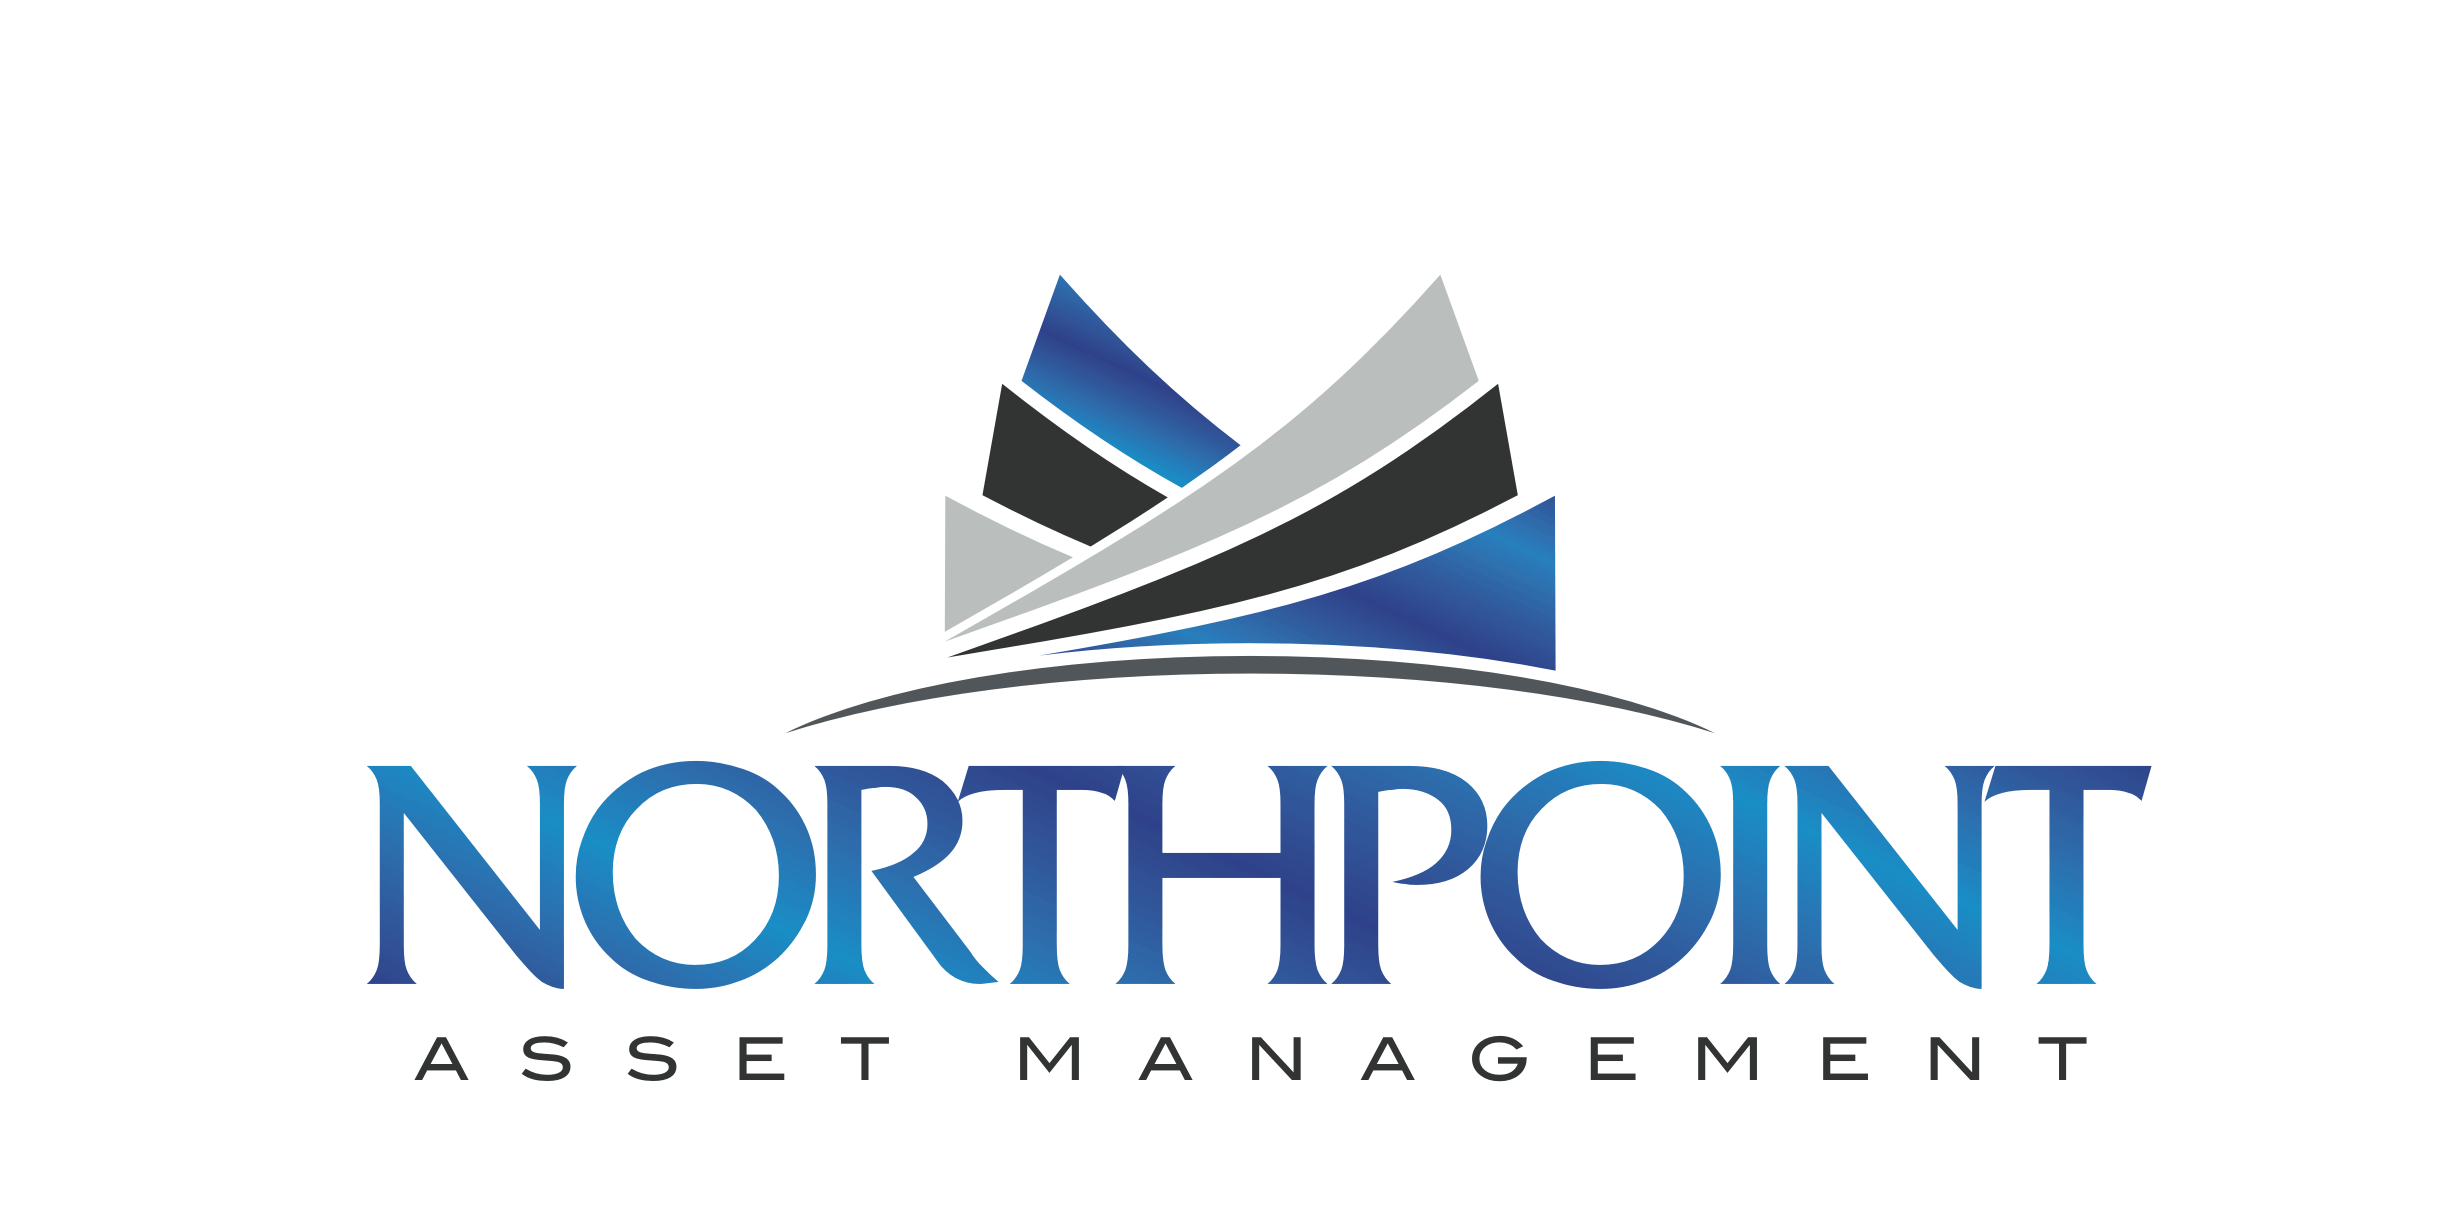 Northpoint Asset Management - Las Vegas logo